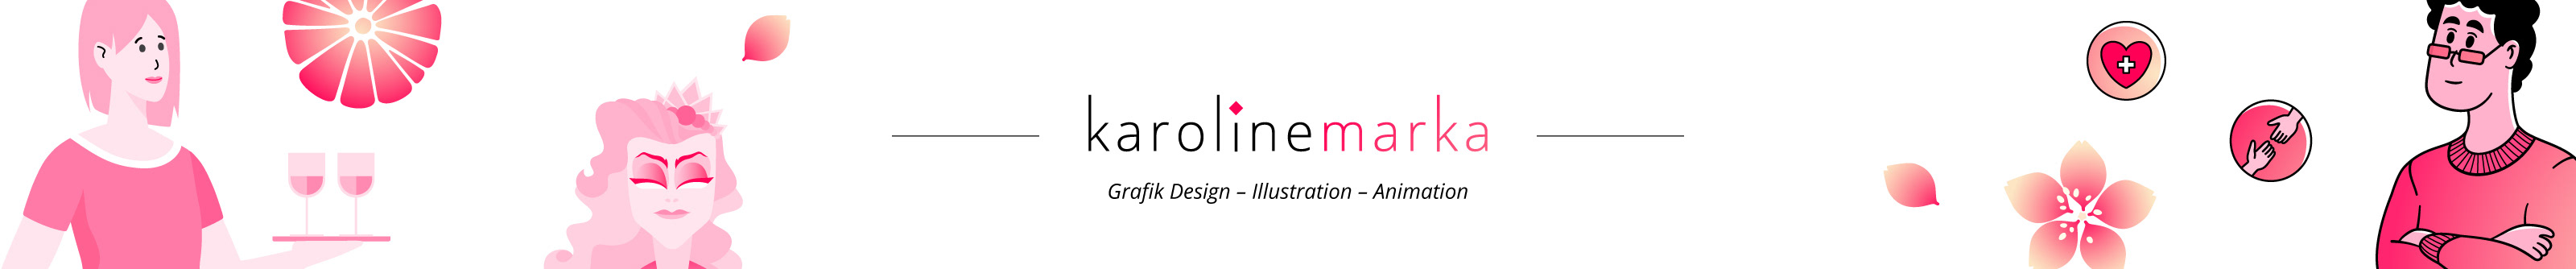 Karoline Marka's profile banner